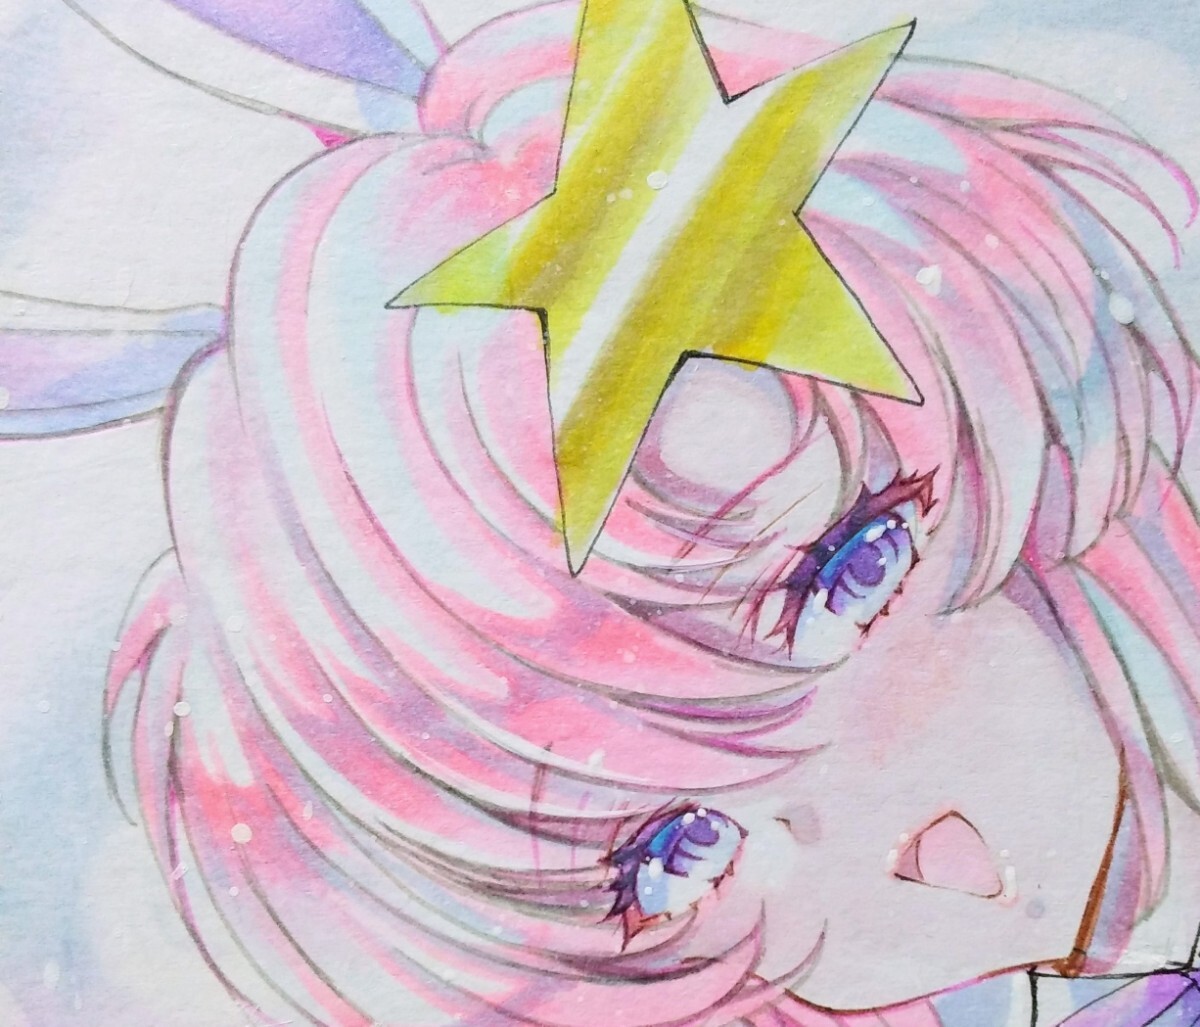 Цветная бумага [Meer Campbell Bunny Gundam] Bunny Girl Doujin Оригинальная рисованная иллюстрация Девушка Иллюстрация, комиксы, аниме товары, рисованная иллюстрация